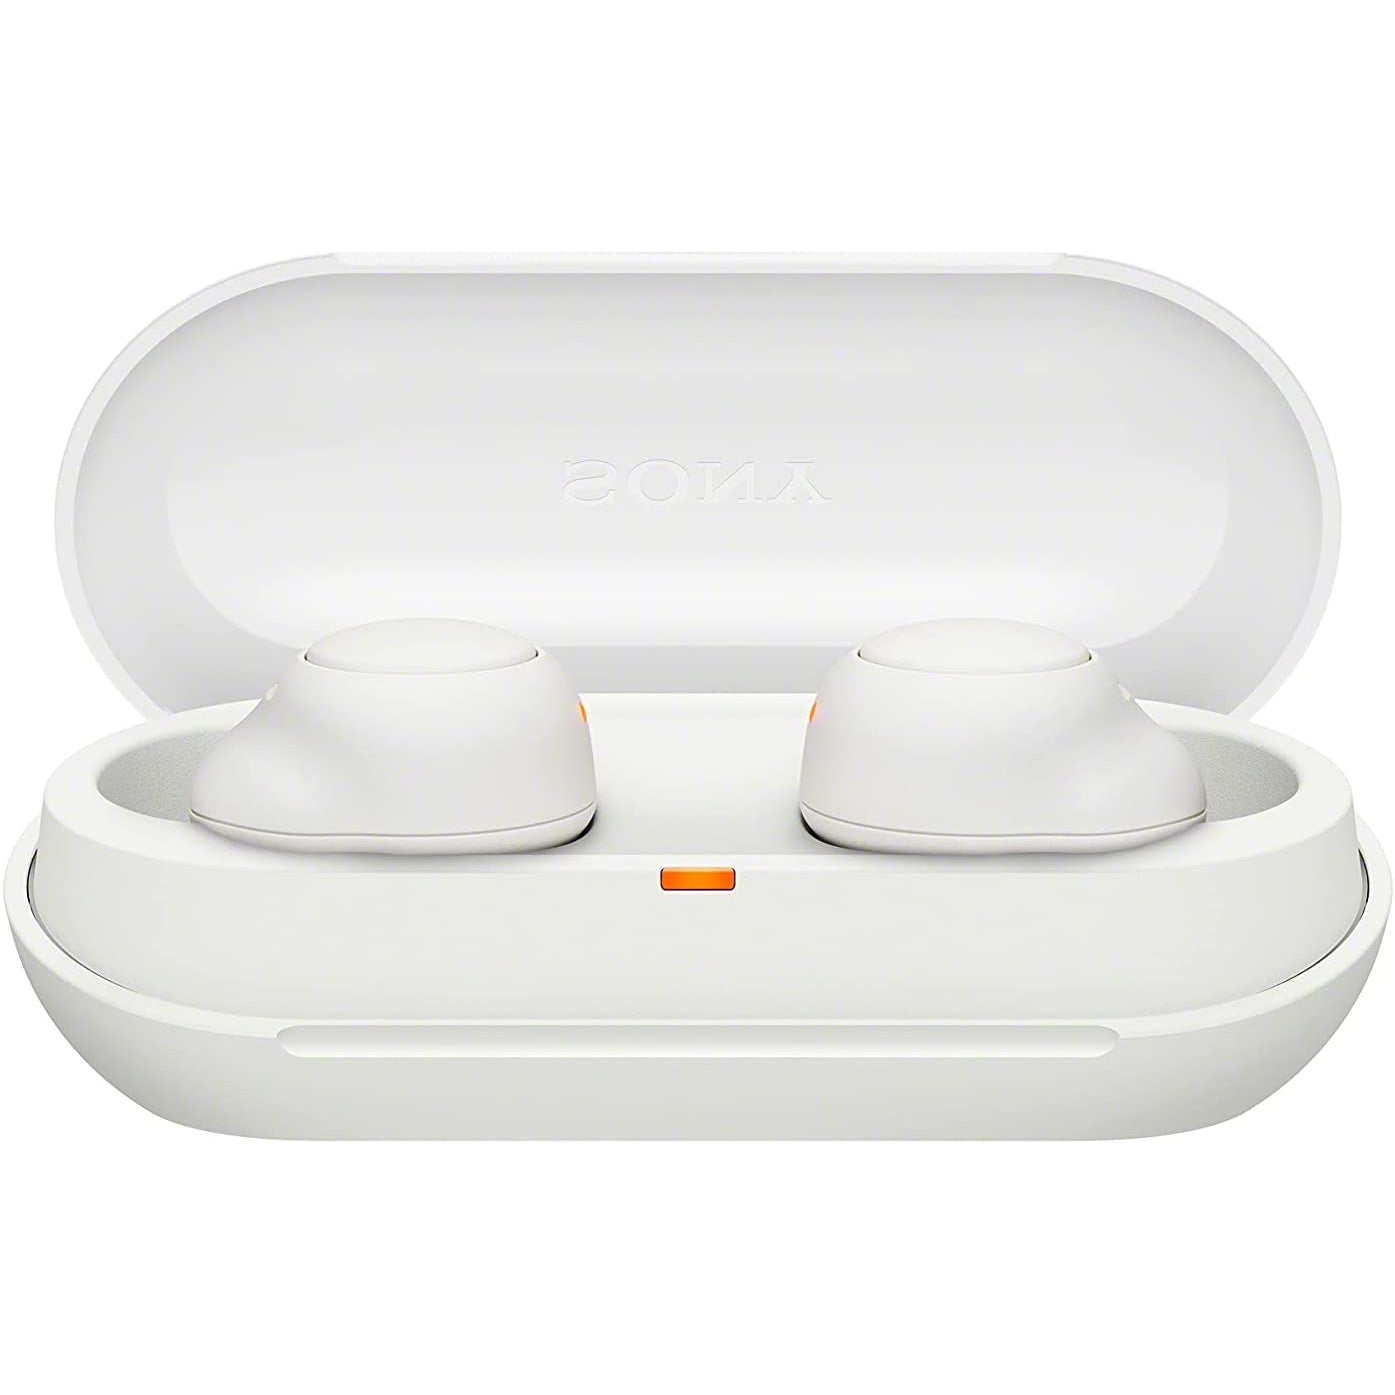 Sony WF-C500 Wireless Earbuds - White - Refurbished Pristine